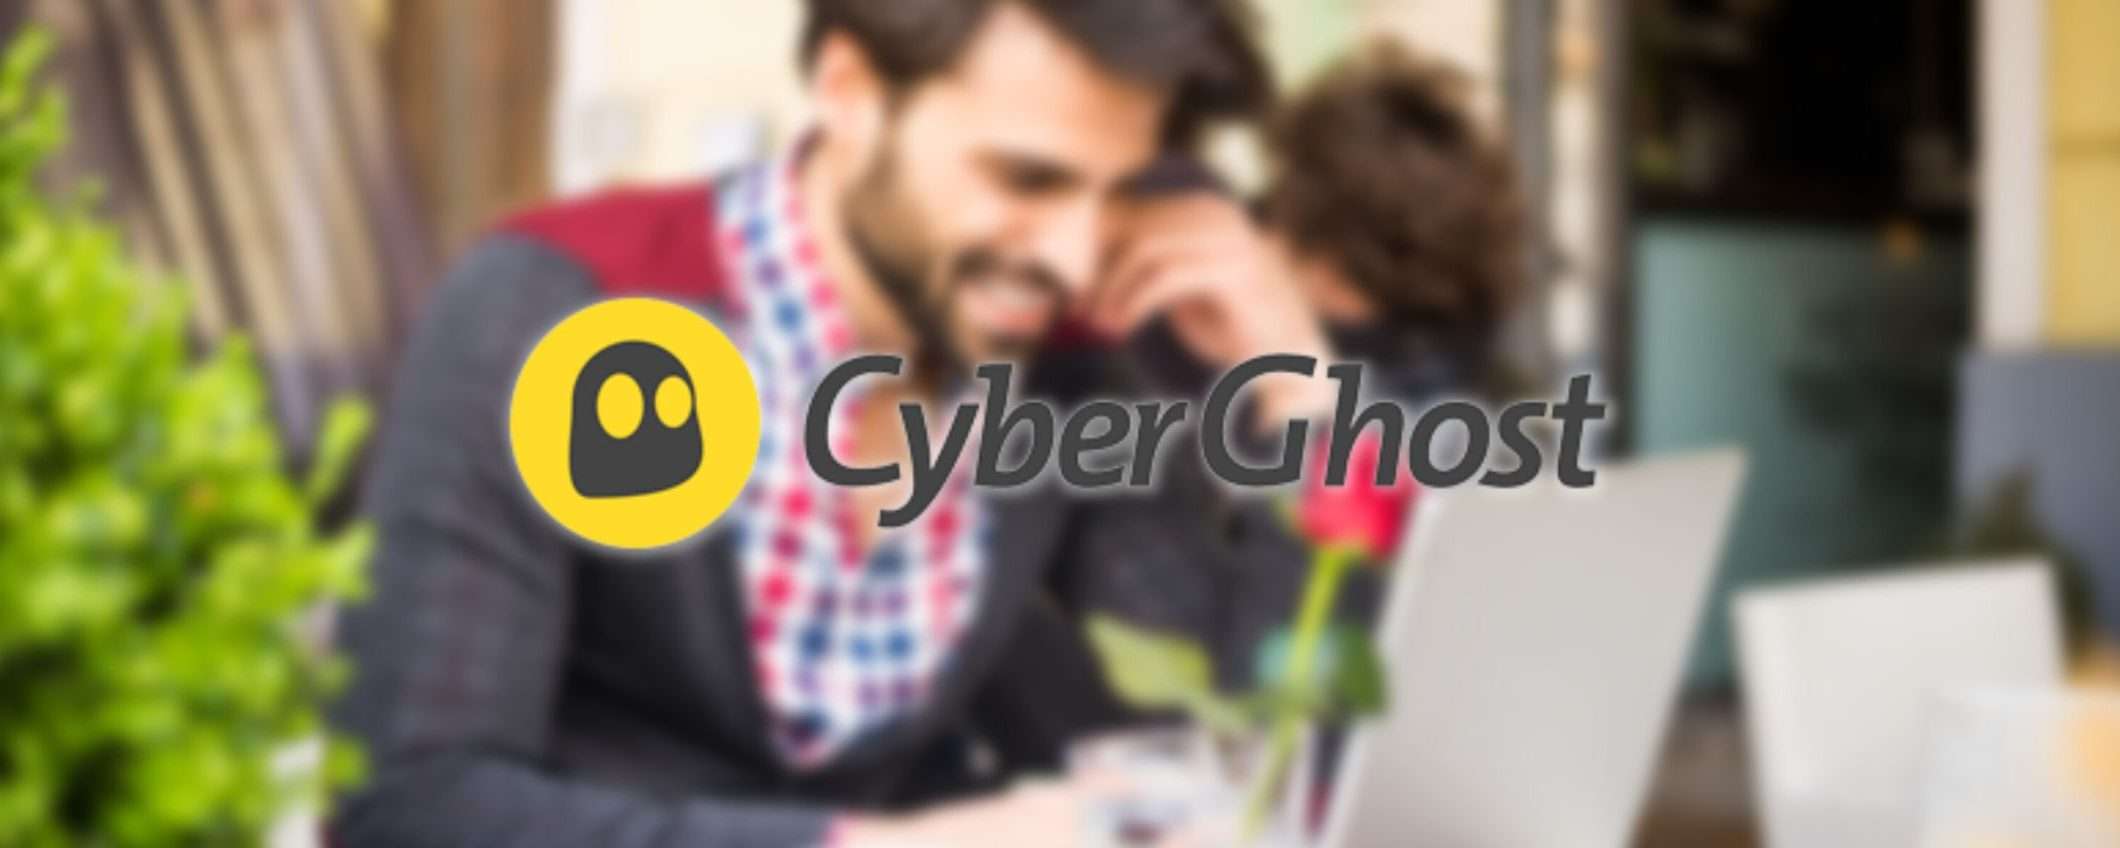 Cyberghost è la VPN che offre il miglior rapporto qualità-prezzo, ecco perché